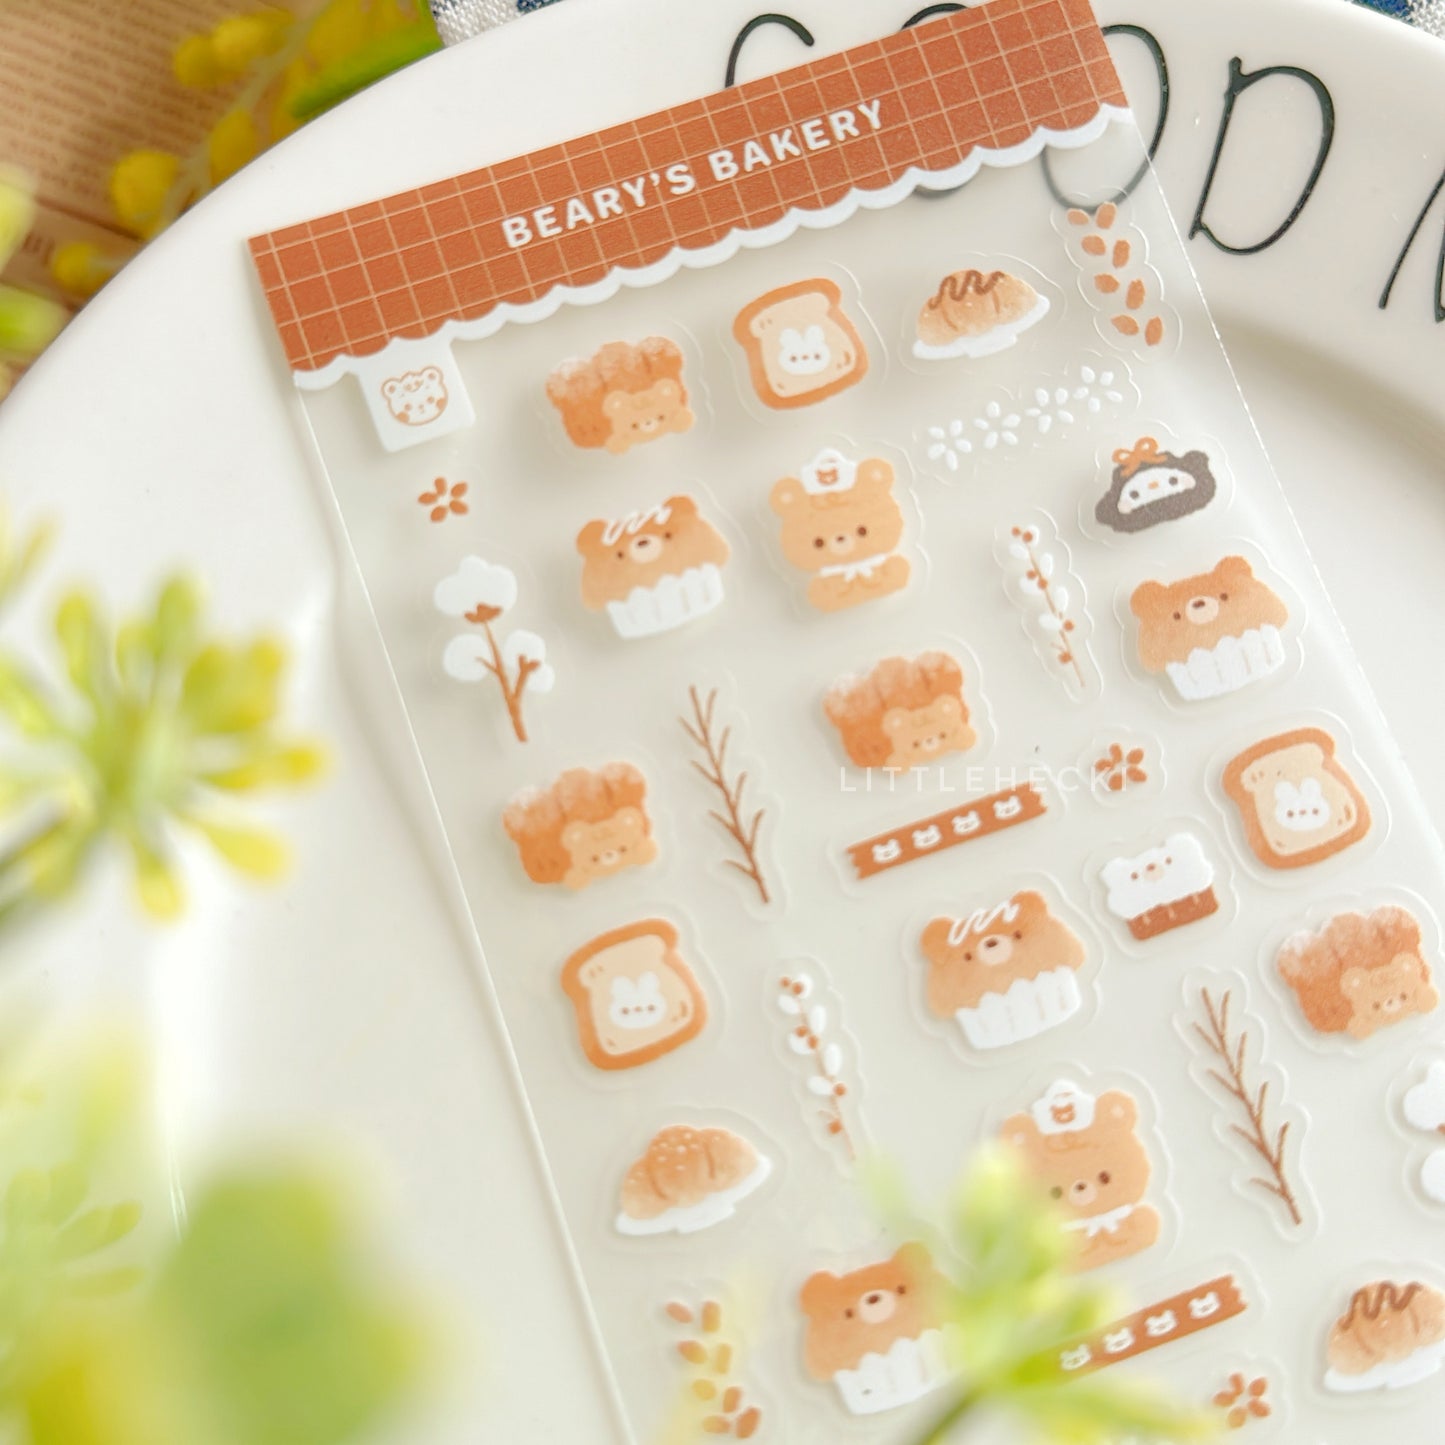 Beary Bakery Transparent Sticker Sheet